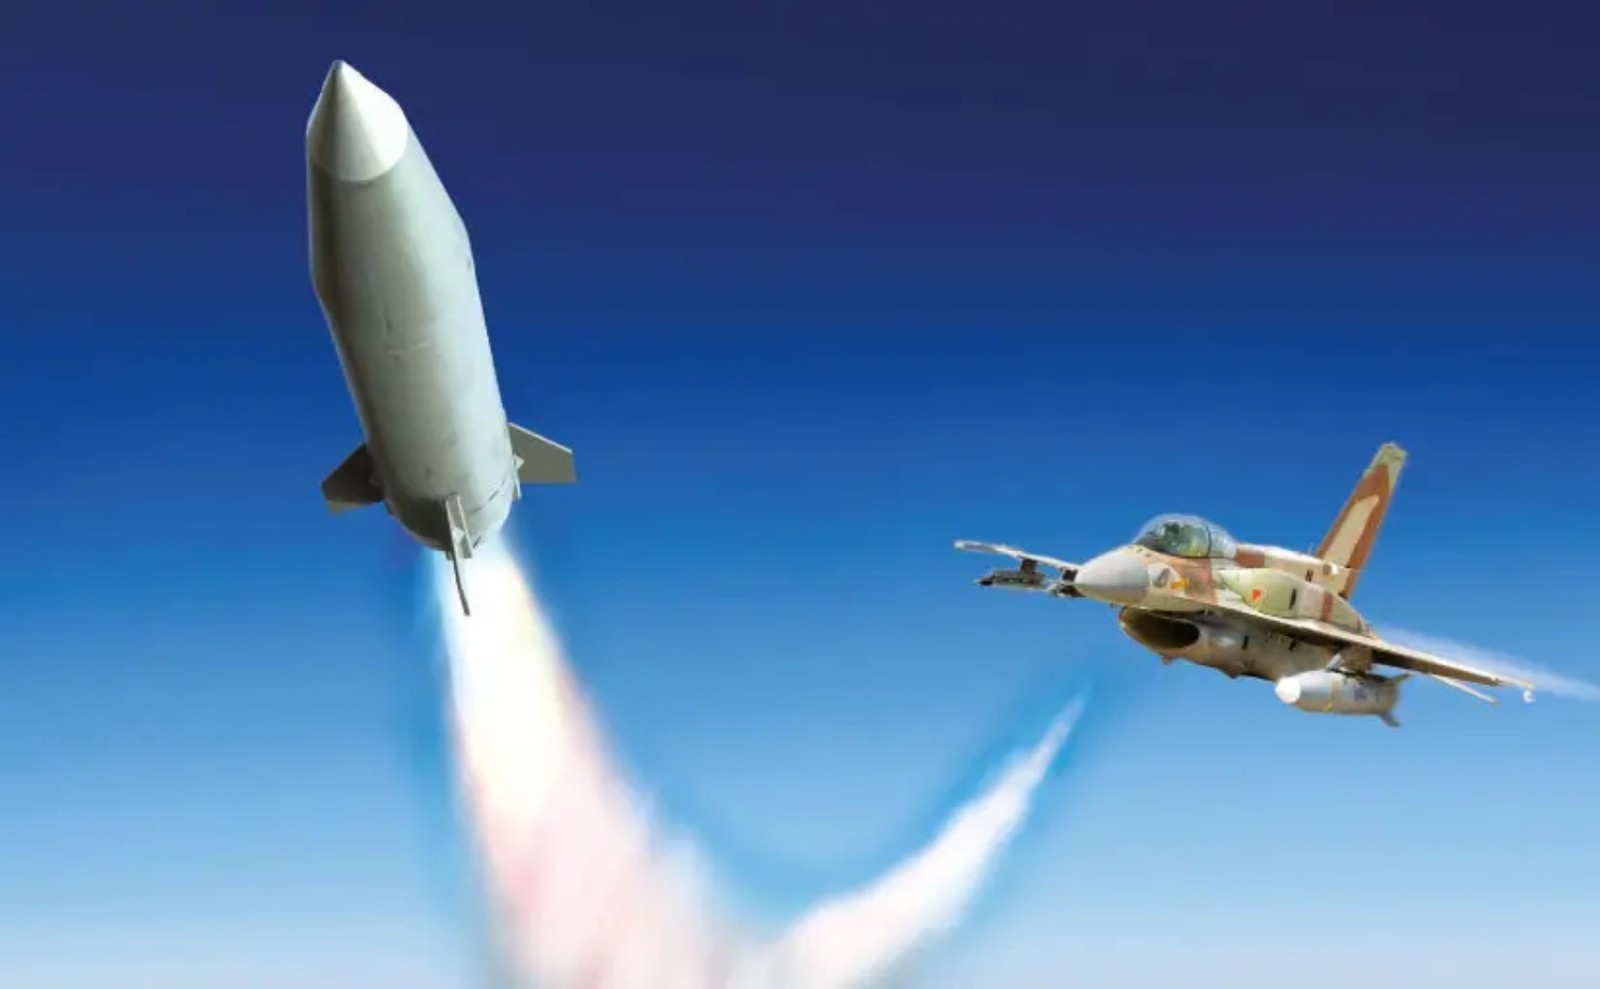 Izrael przeniósł naziemnego niszczyciela w powietrze. Air LORA to pionierski pocisk balistyczny